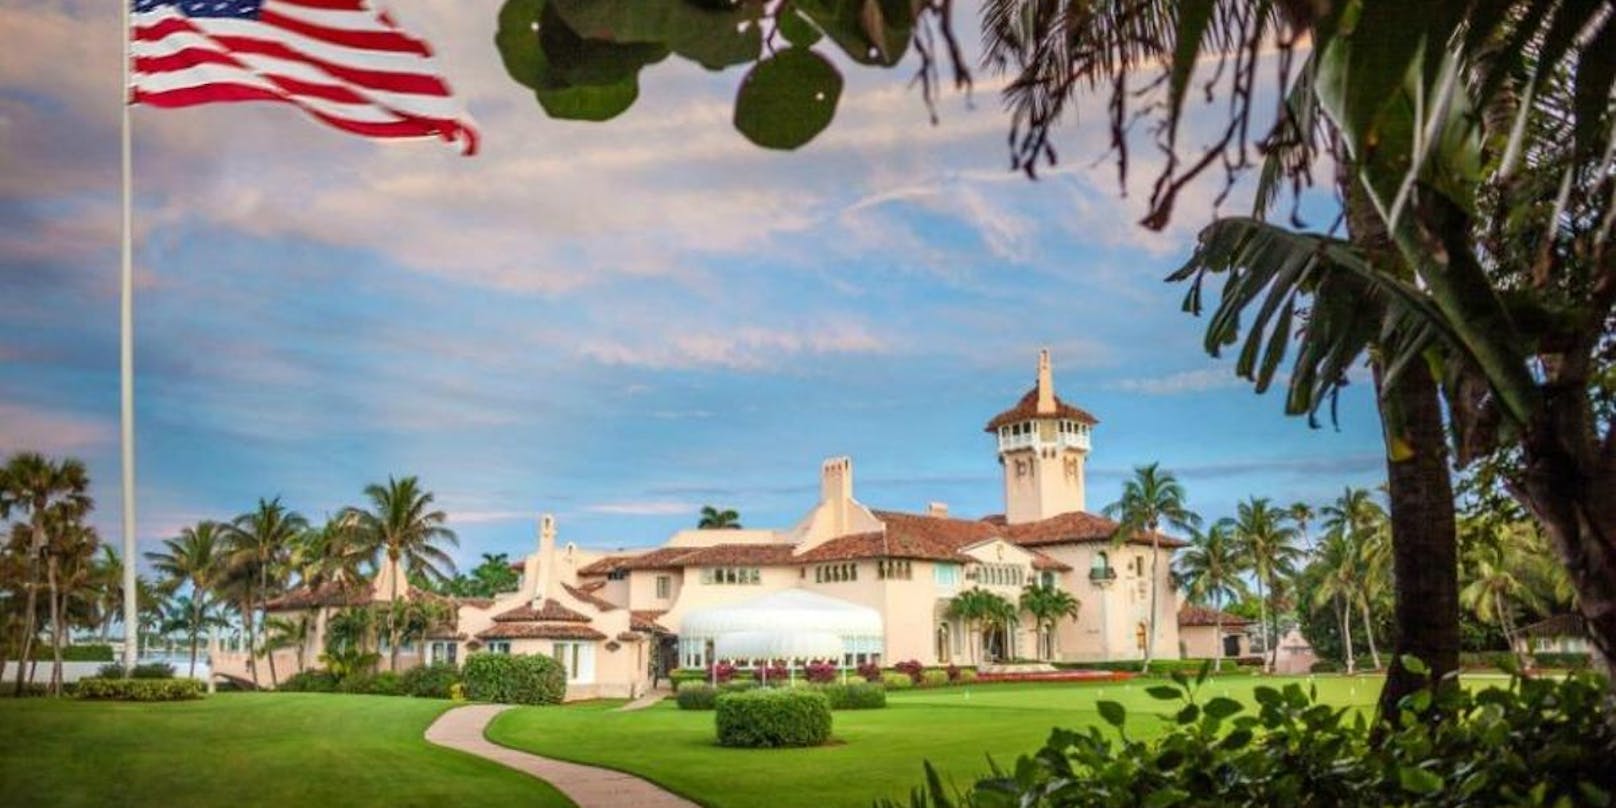 Die Außenansicht der Residenz Mar-a-Lago von Donald Trump in Palm Springs im US-Bundesstaat Florida.